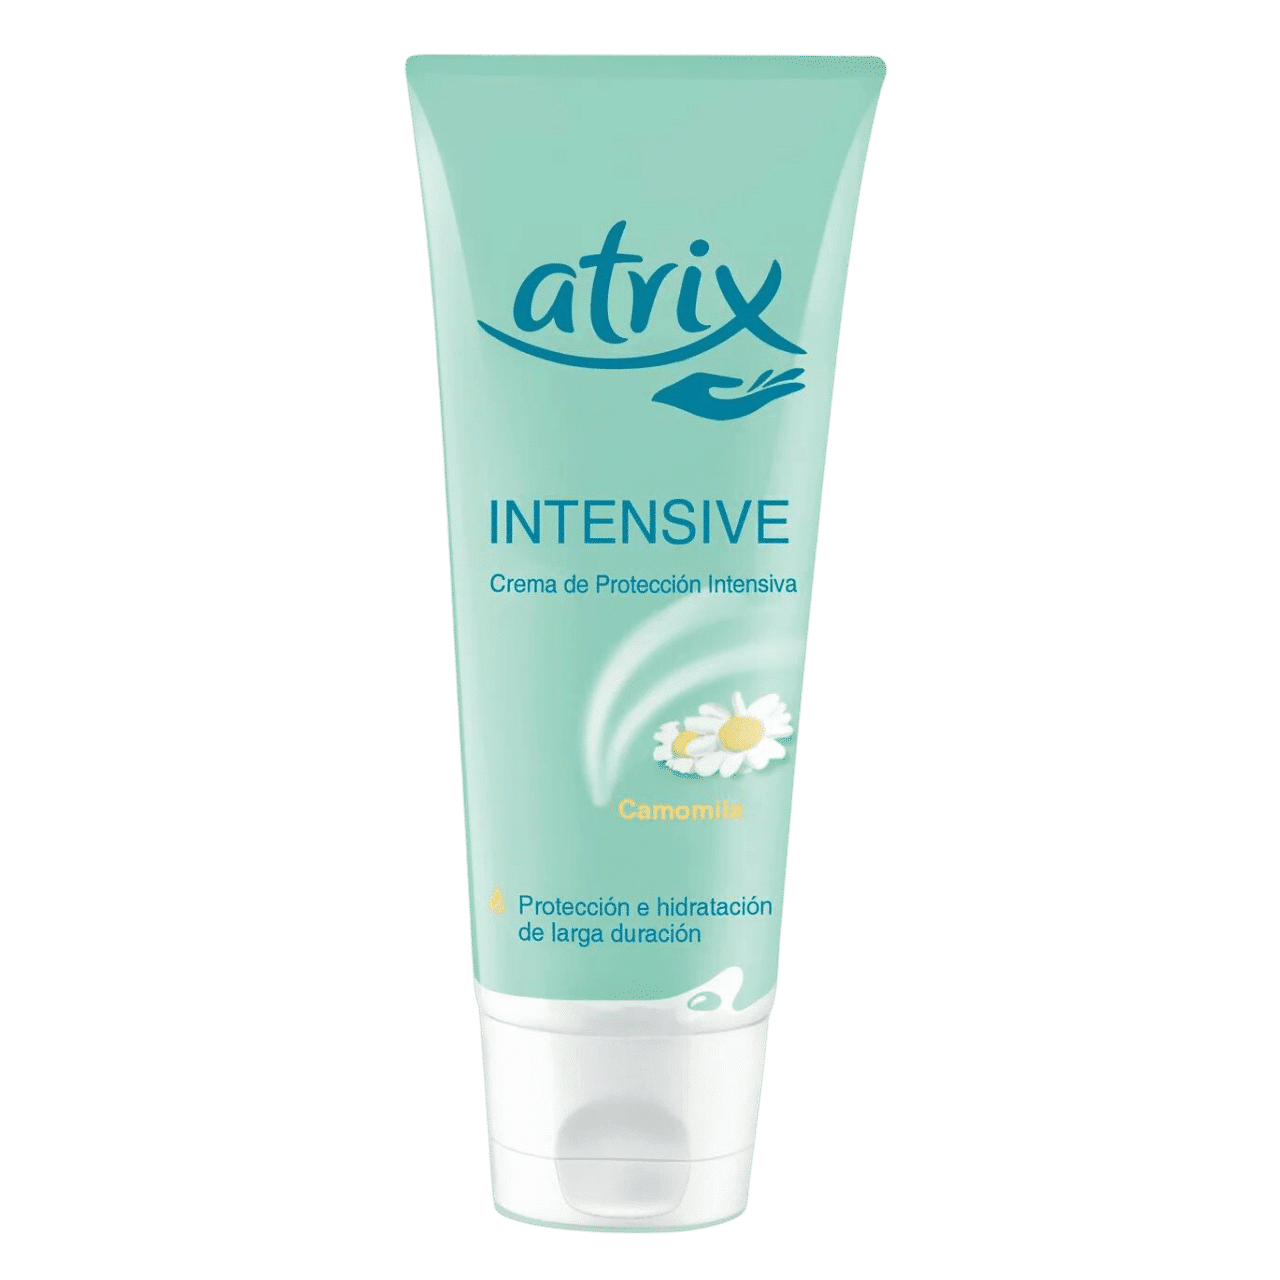 Kem tay Intensive Protection Cream của thương hiệu Atrix là một sản phẩm chăm sóc da tay chất lượng cao, được thiết kế để cung cấp độ ẩm và bảo vệ da tay khỏi tác động của môi trường và các yếu tố gây tổn thương khác. Với công thức đặc biệt và các thành phần dưỡng chất, kem tay này giúp duy trì đôi tay mềm mịn, mịn màng và bảo vệ chúng khỏi sự khô và nứt nẻ.